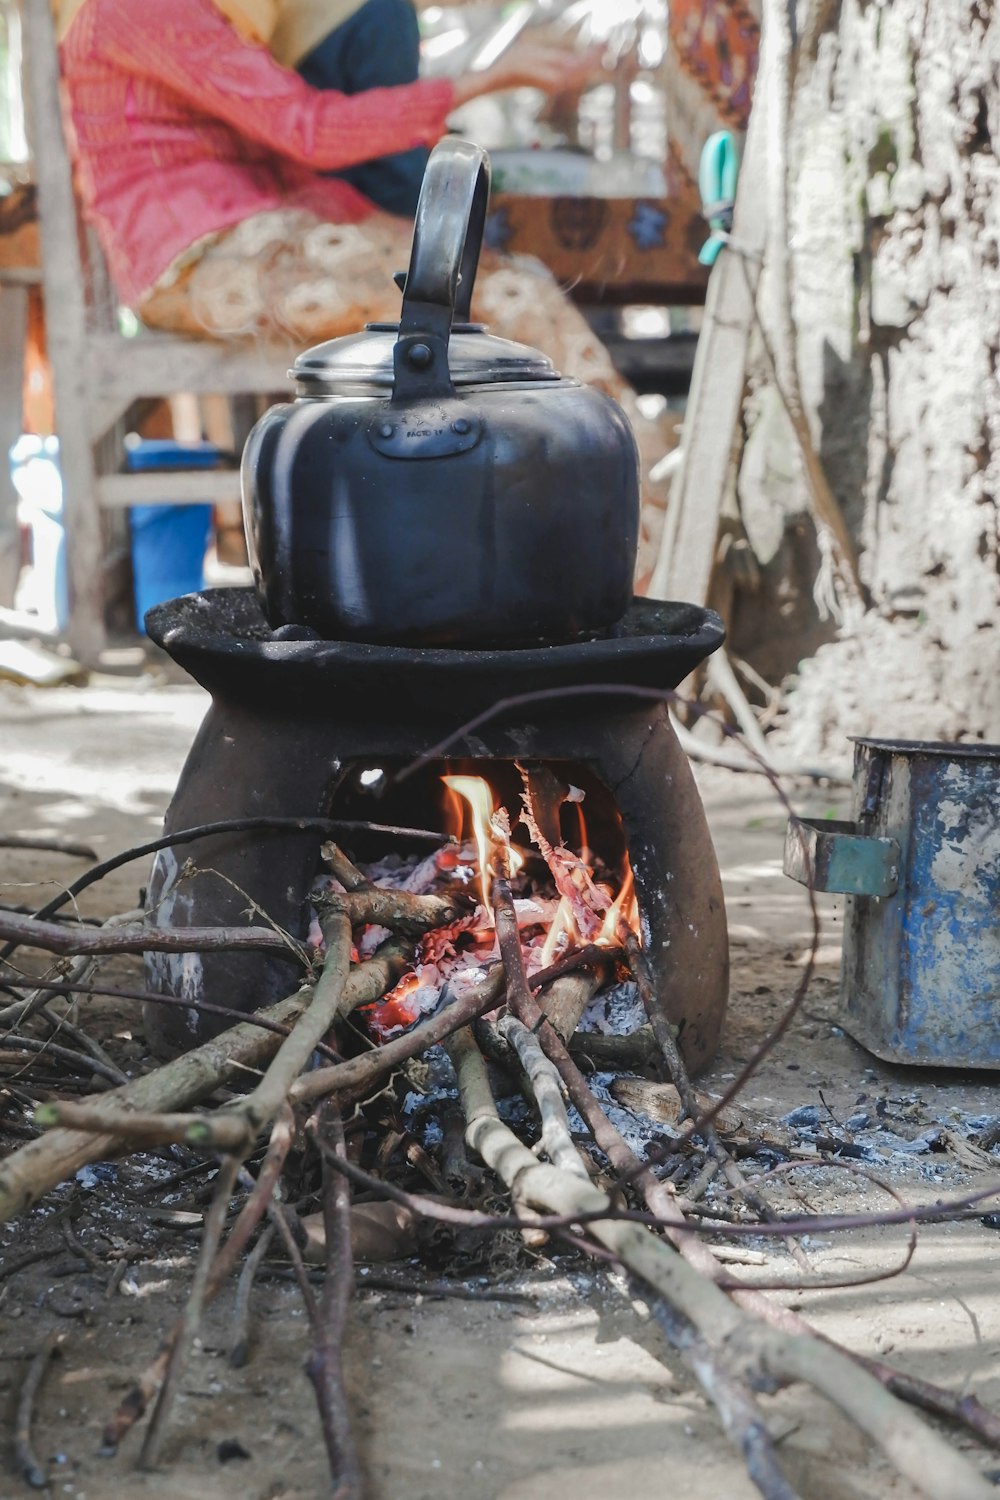 black kettle on burner